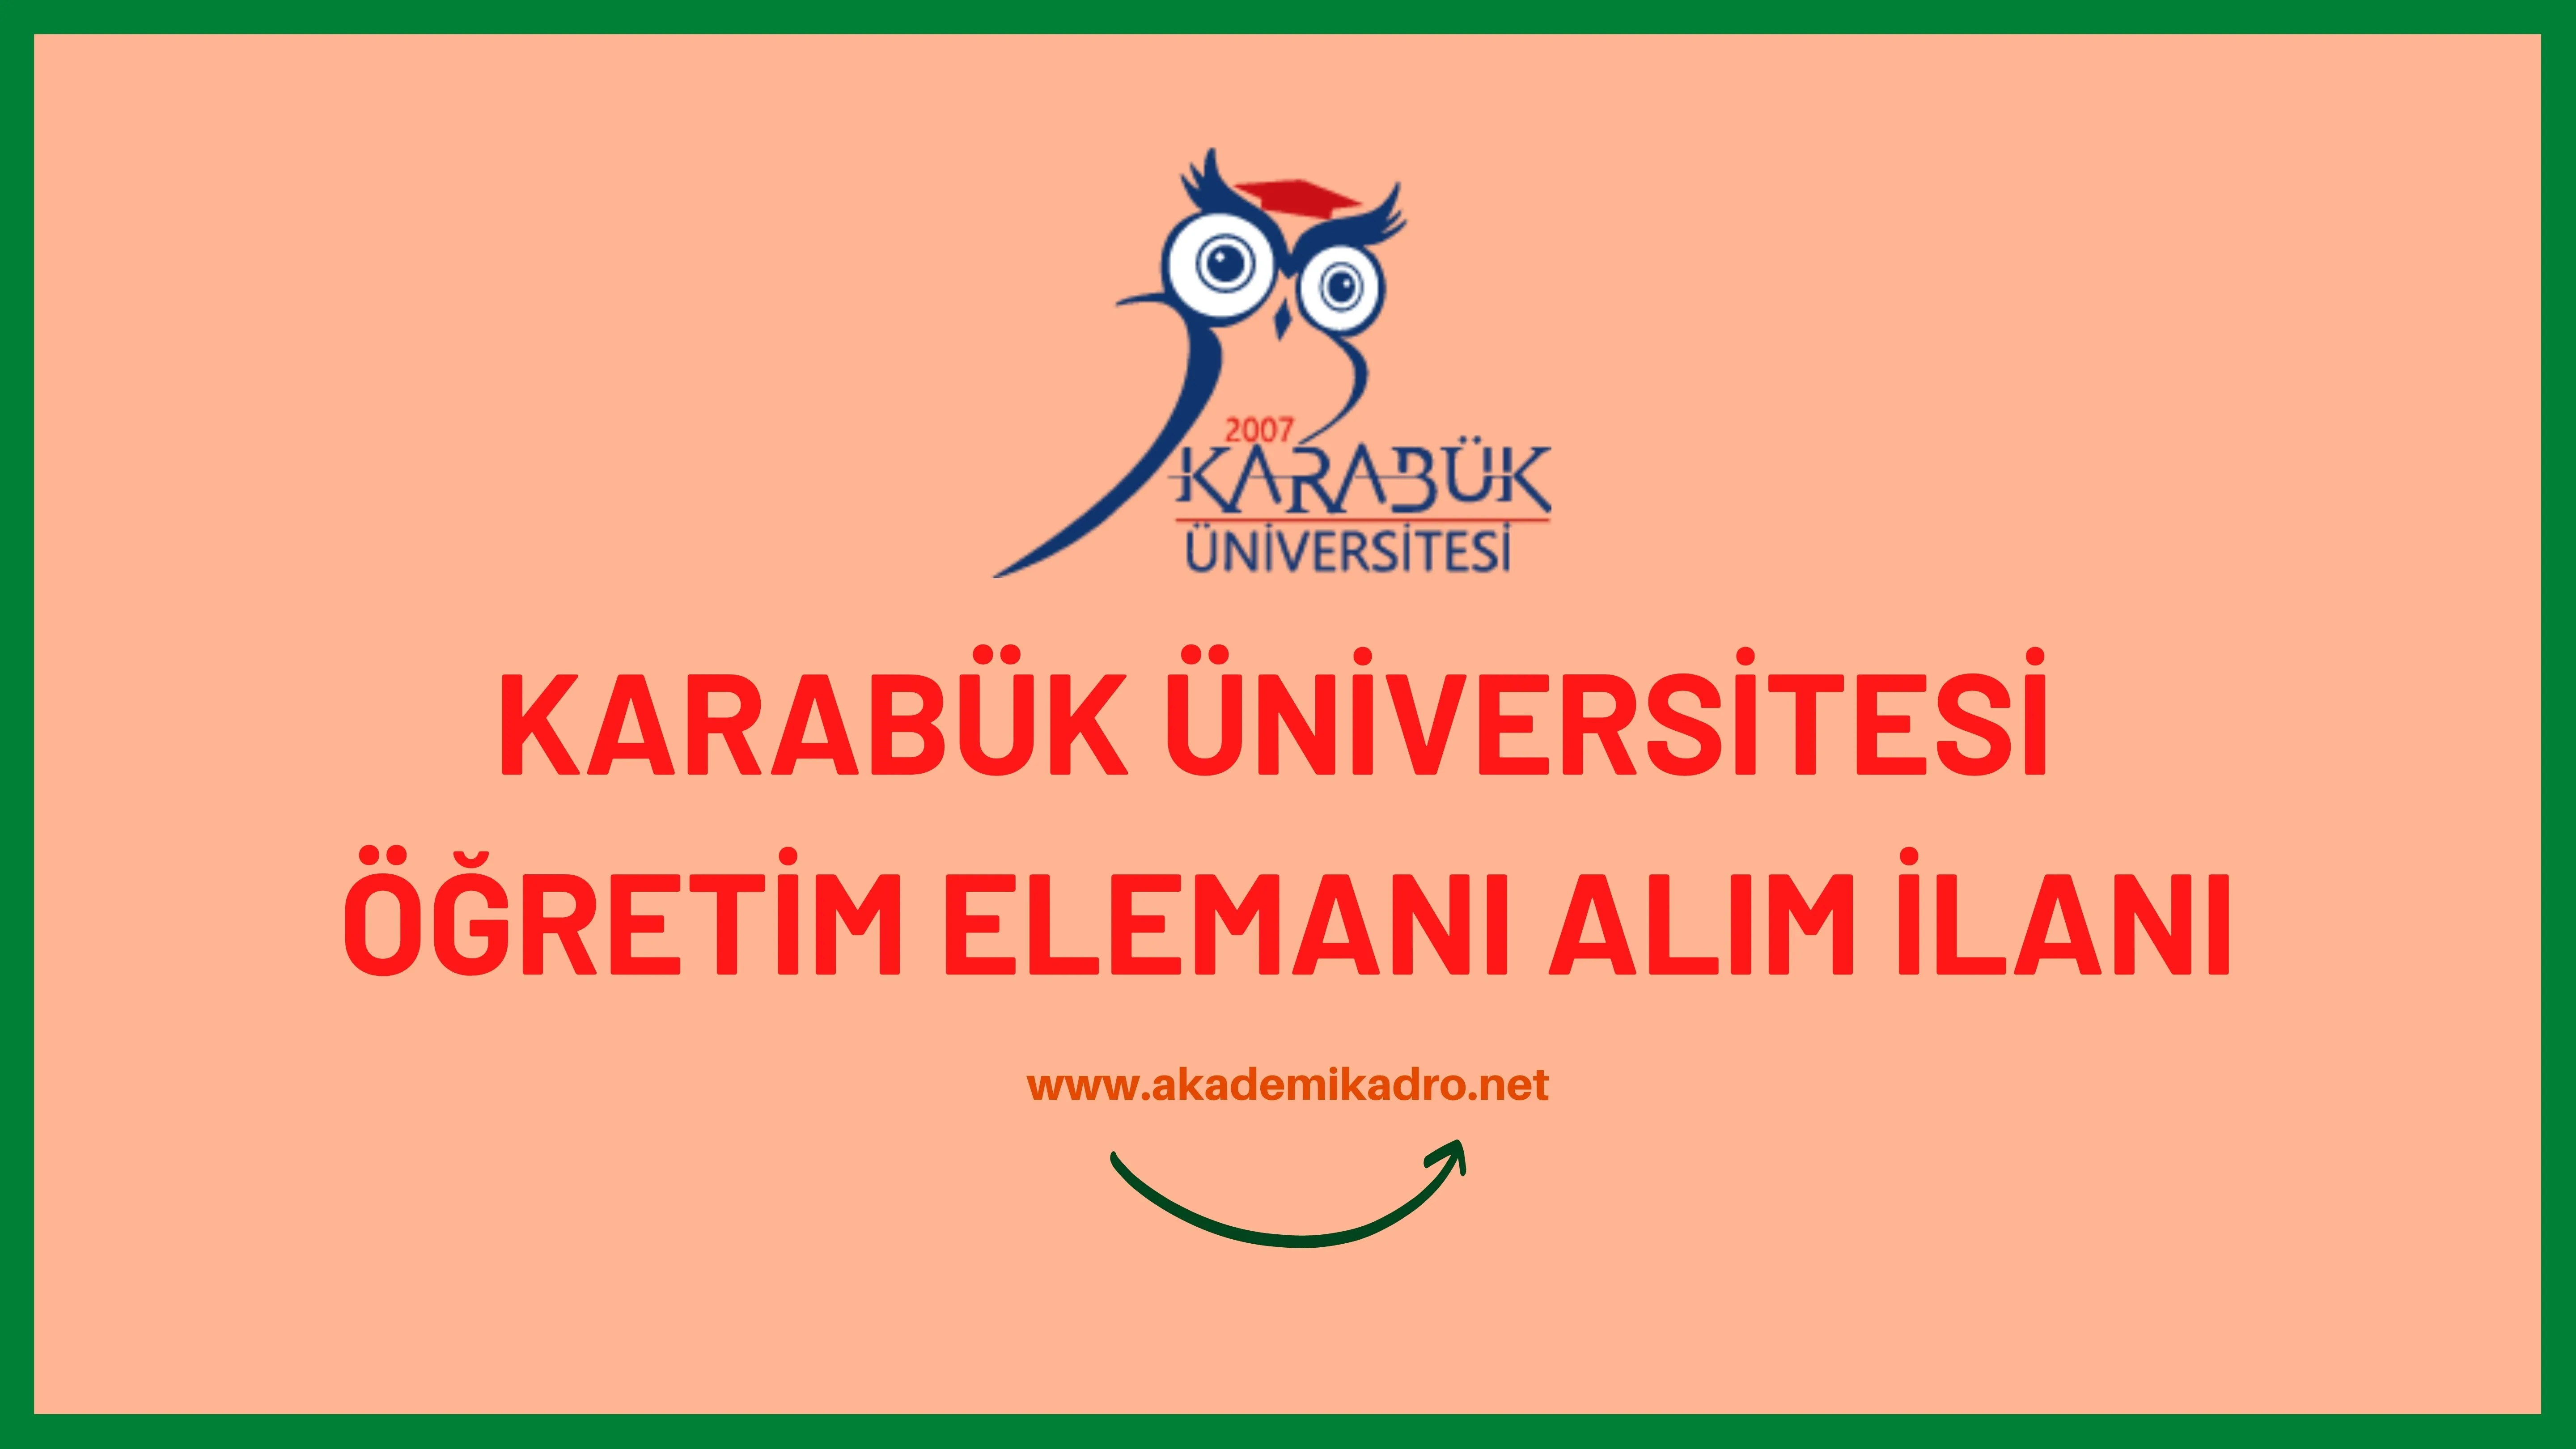 Karabük Üniversitesi 2 Araştırma görevlisi ve 3 Öğretim görevlisi alacaktır. Sın başvuru tarihi 06 ekim 2023